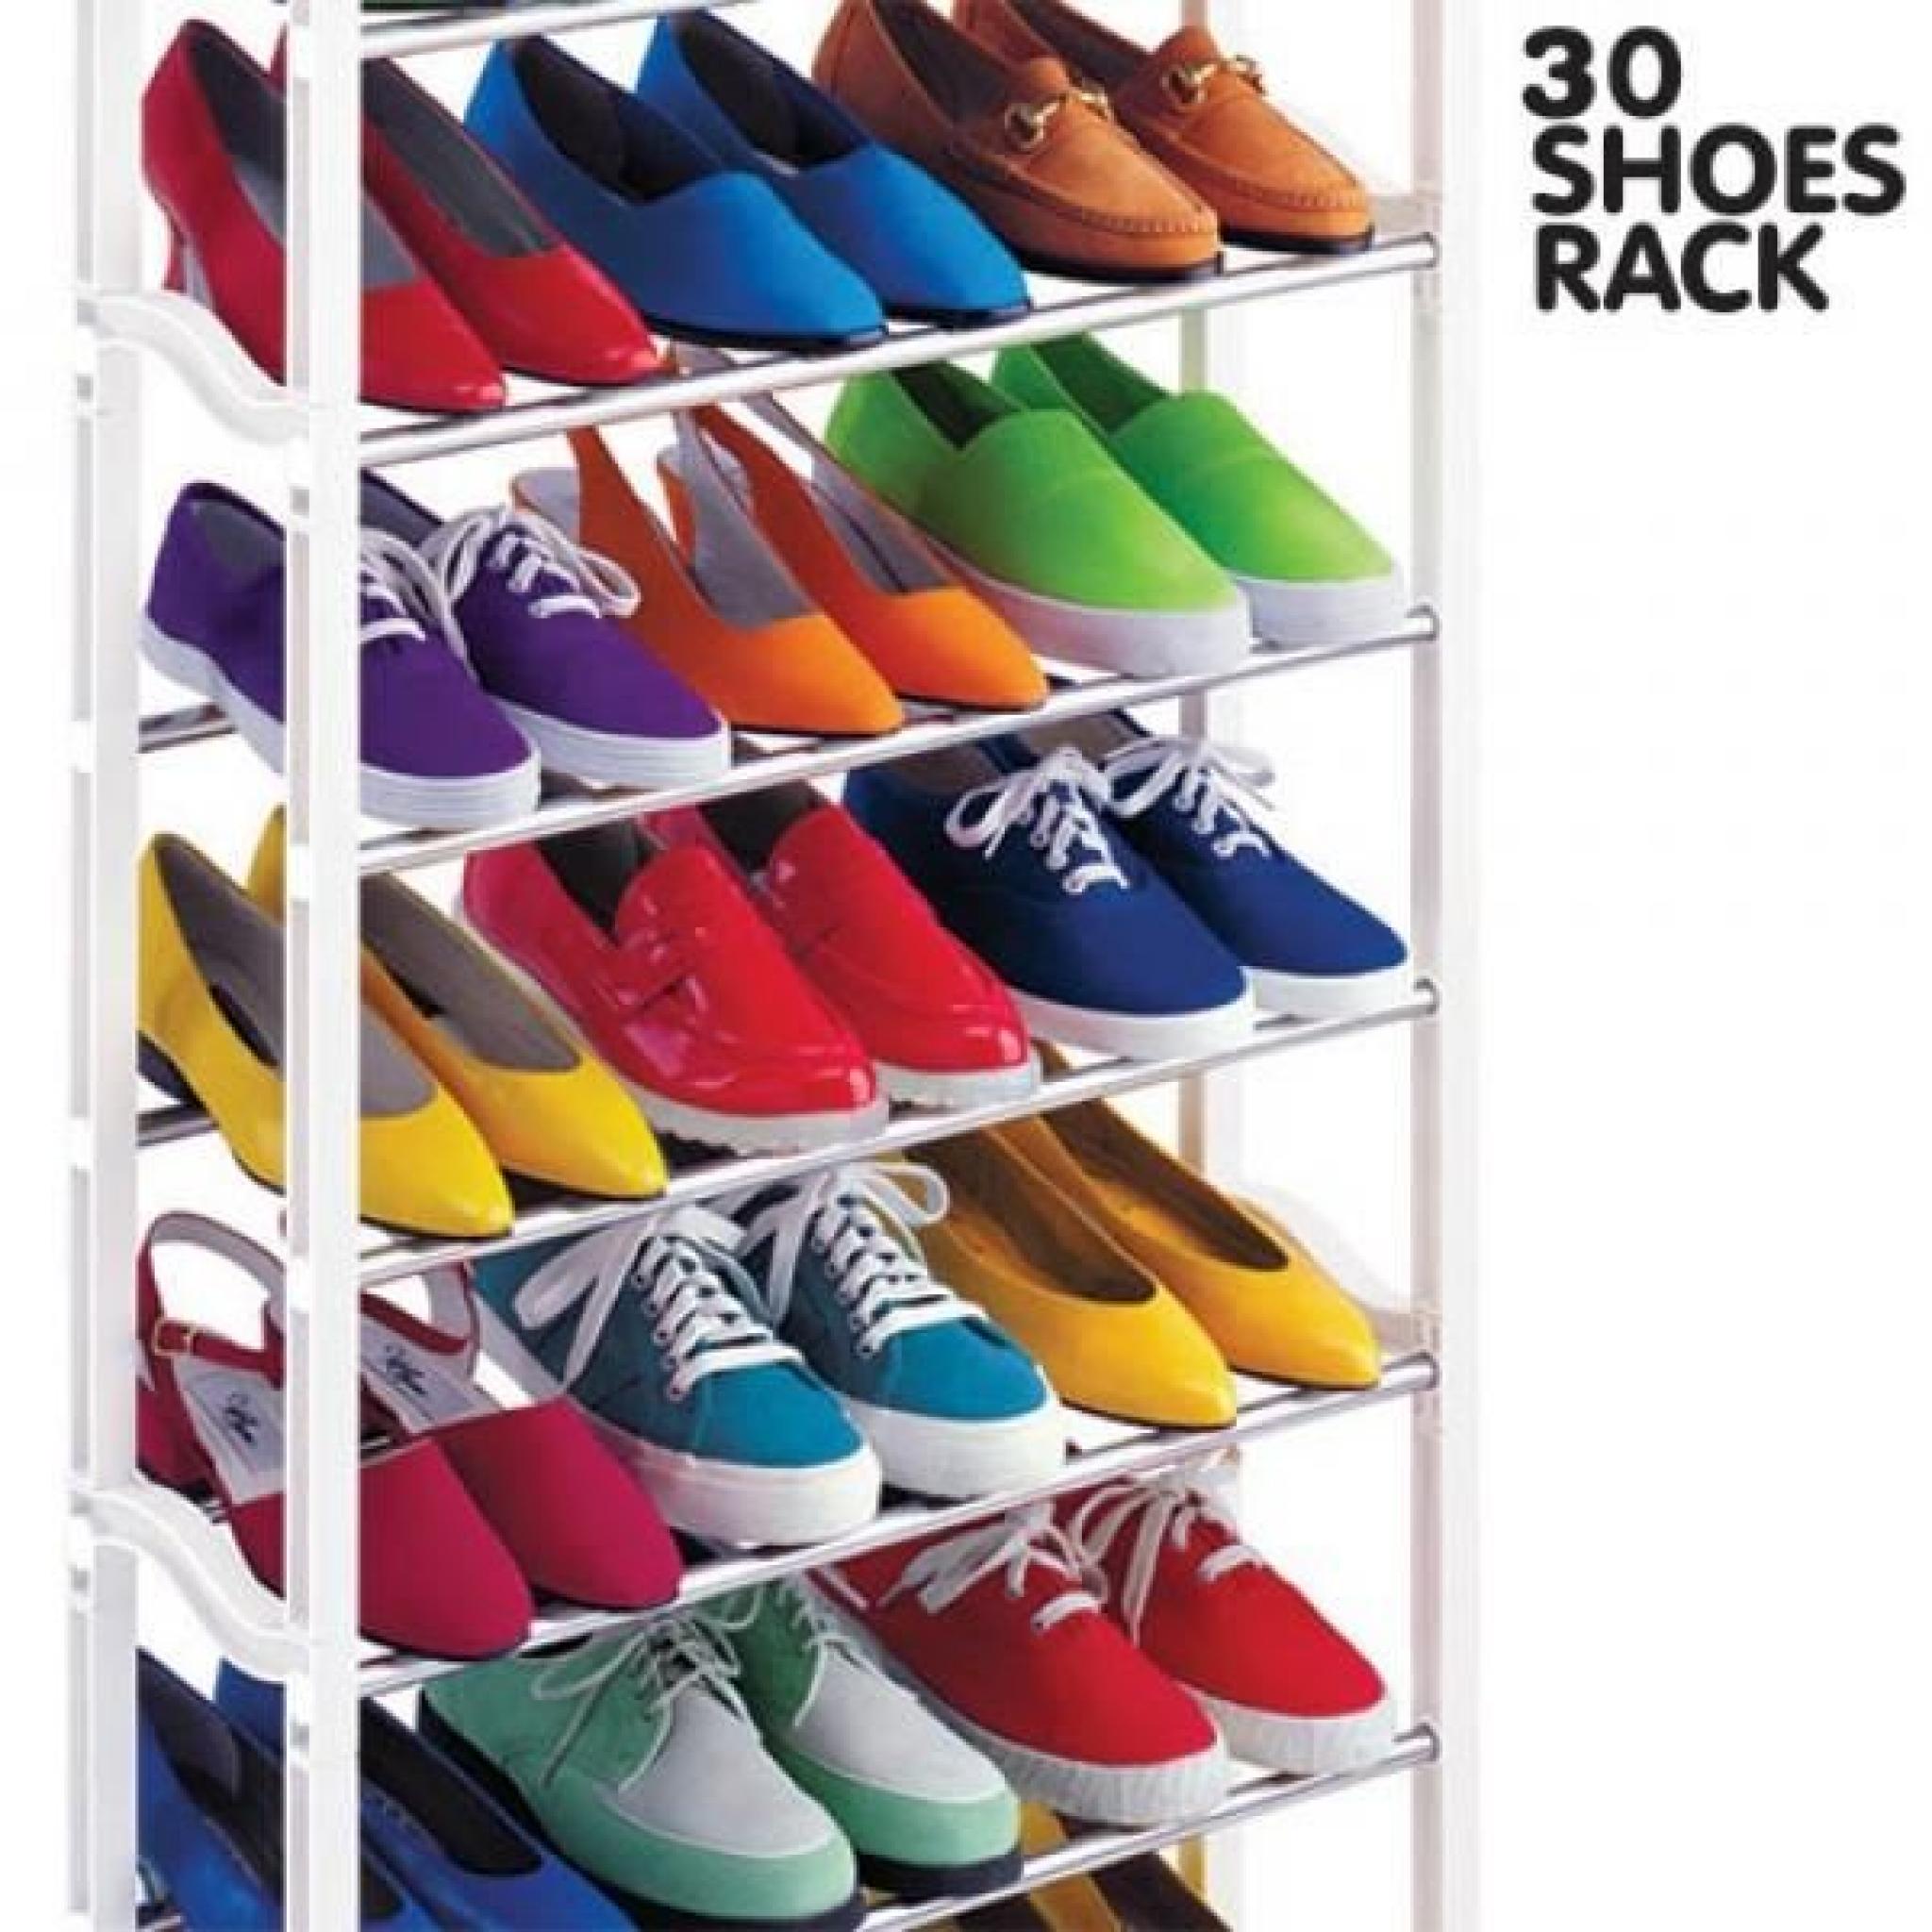 Meuble à Chaussures 30 Shoes Rack Vu à la TV